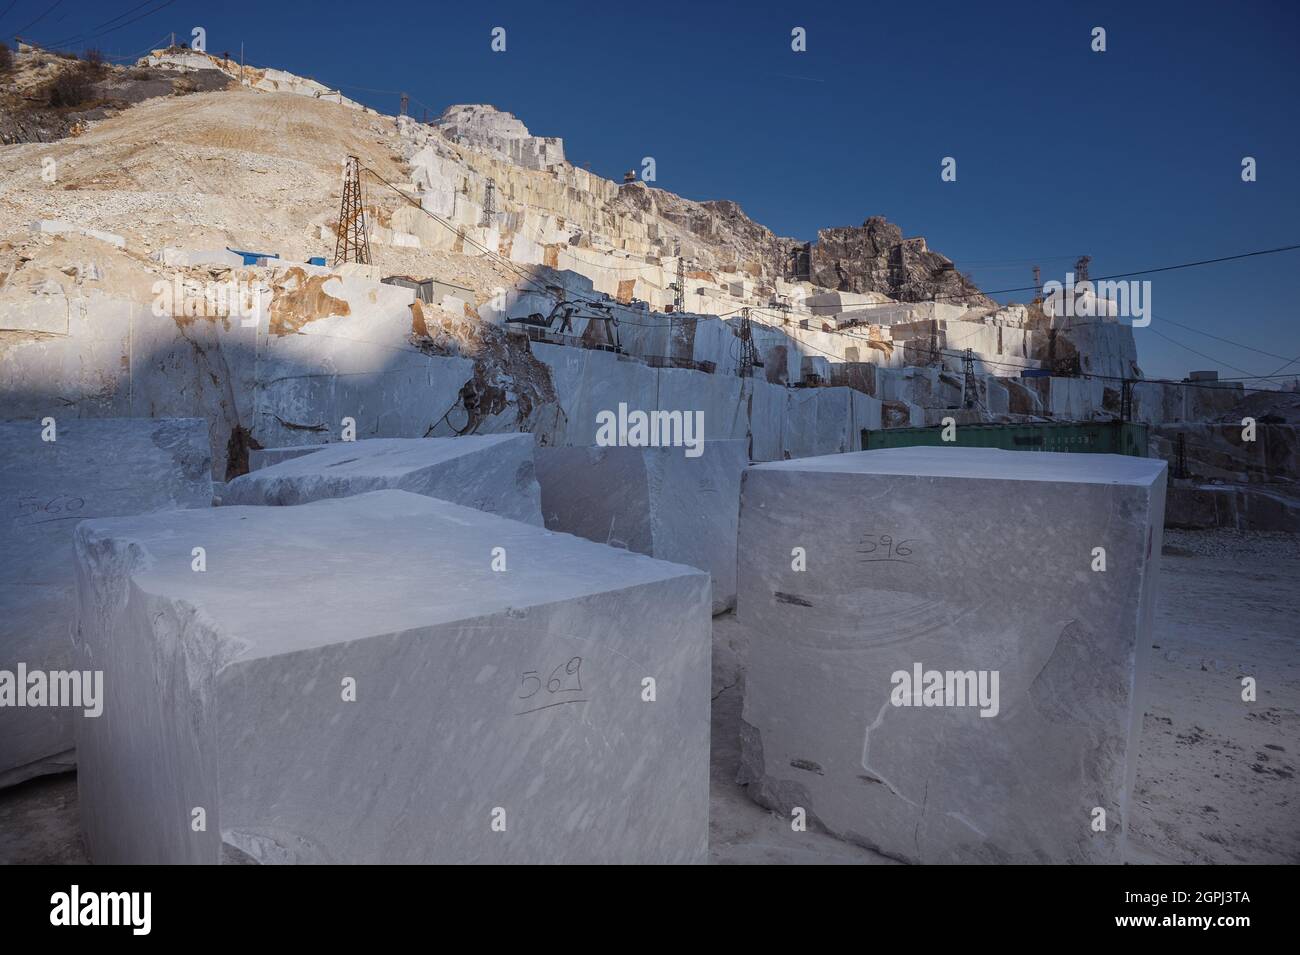 Carrara-Marmorbrüche, viereckige weiße Marmorblöcke auf dem Steinbruch von Gioia, Bulldozer, Maschinen, Bagger, Massa-Carrara, Lunigiana, Toskana, Italien Stockfoto